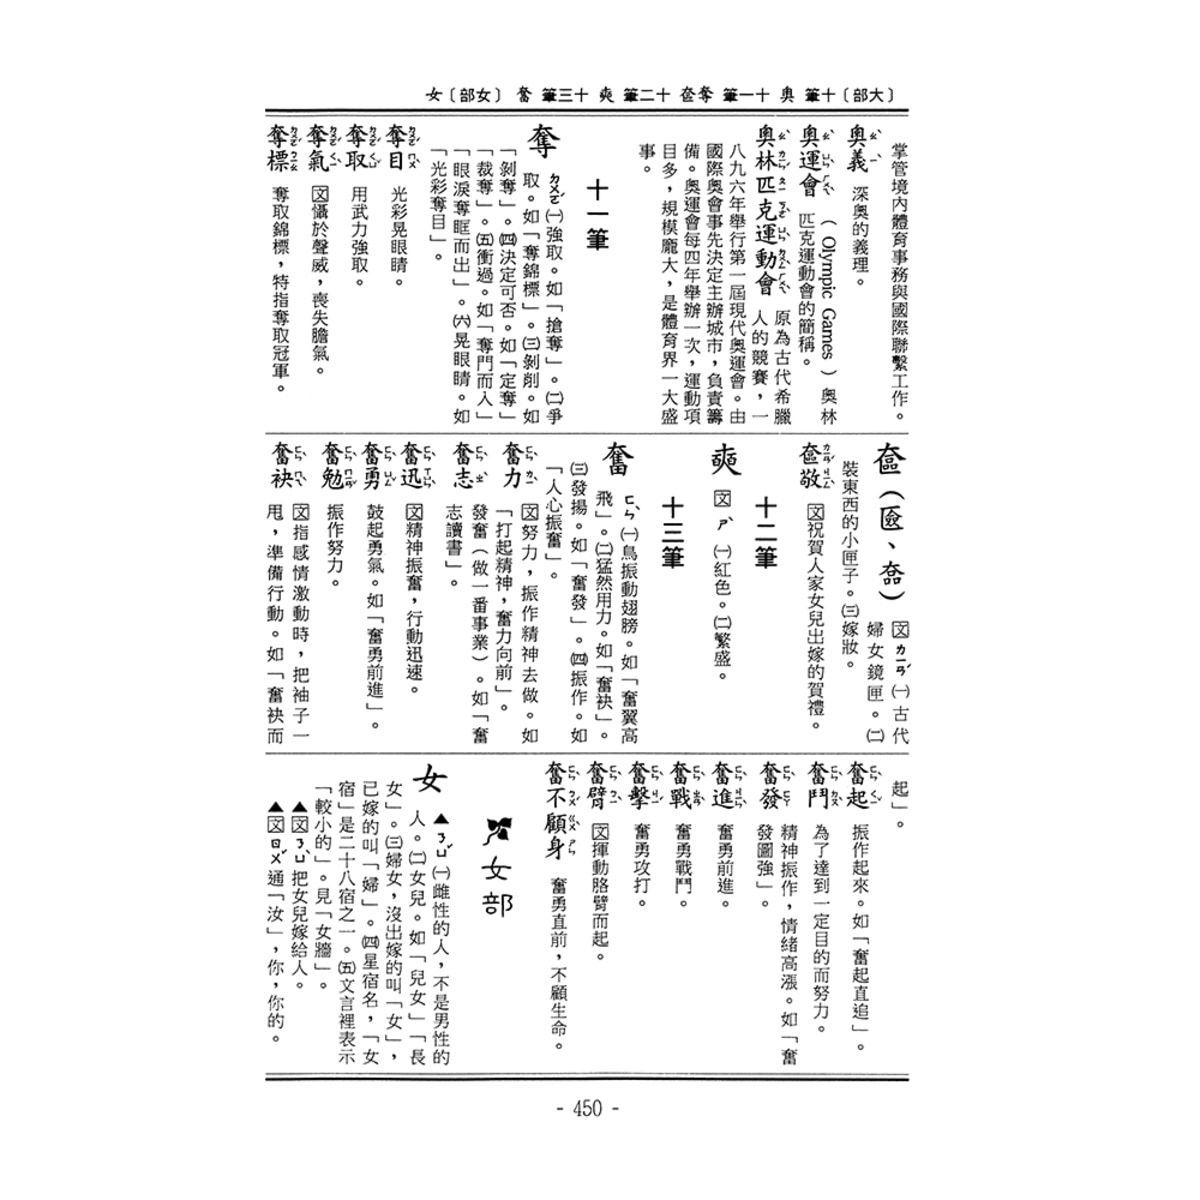 新編國語日報辭典(修訂版)